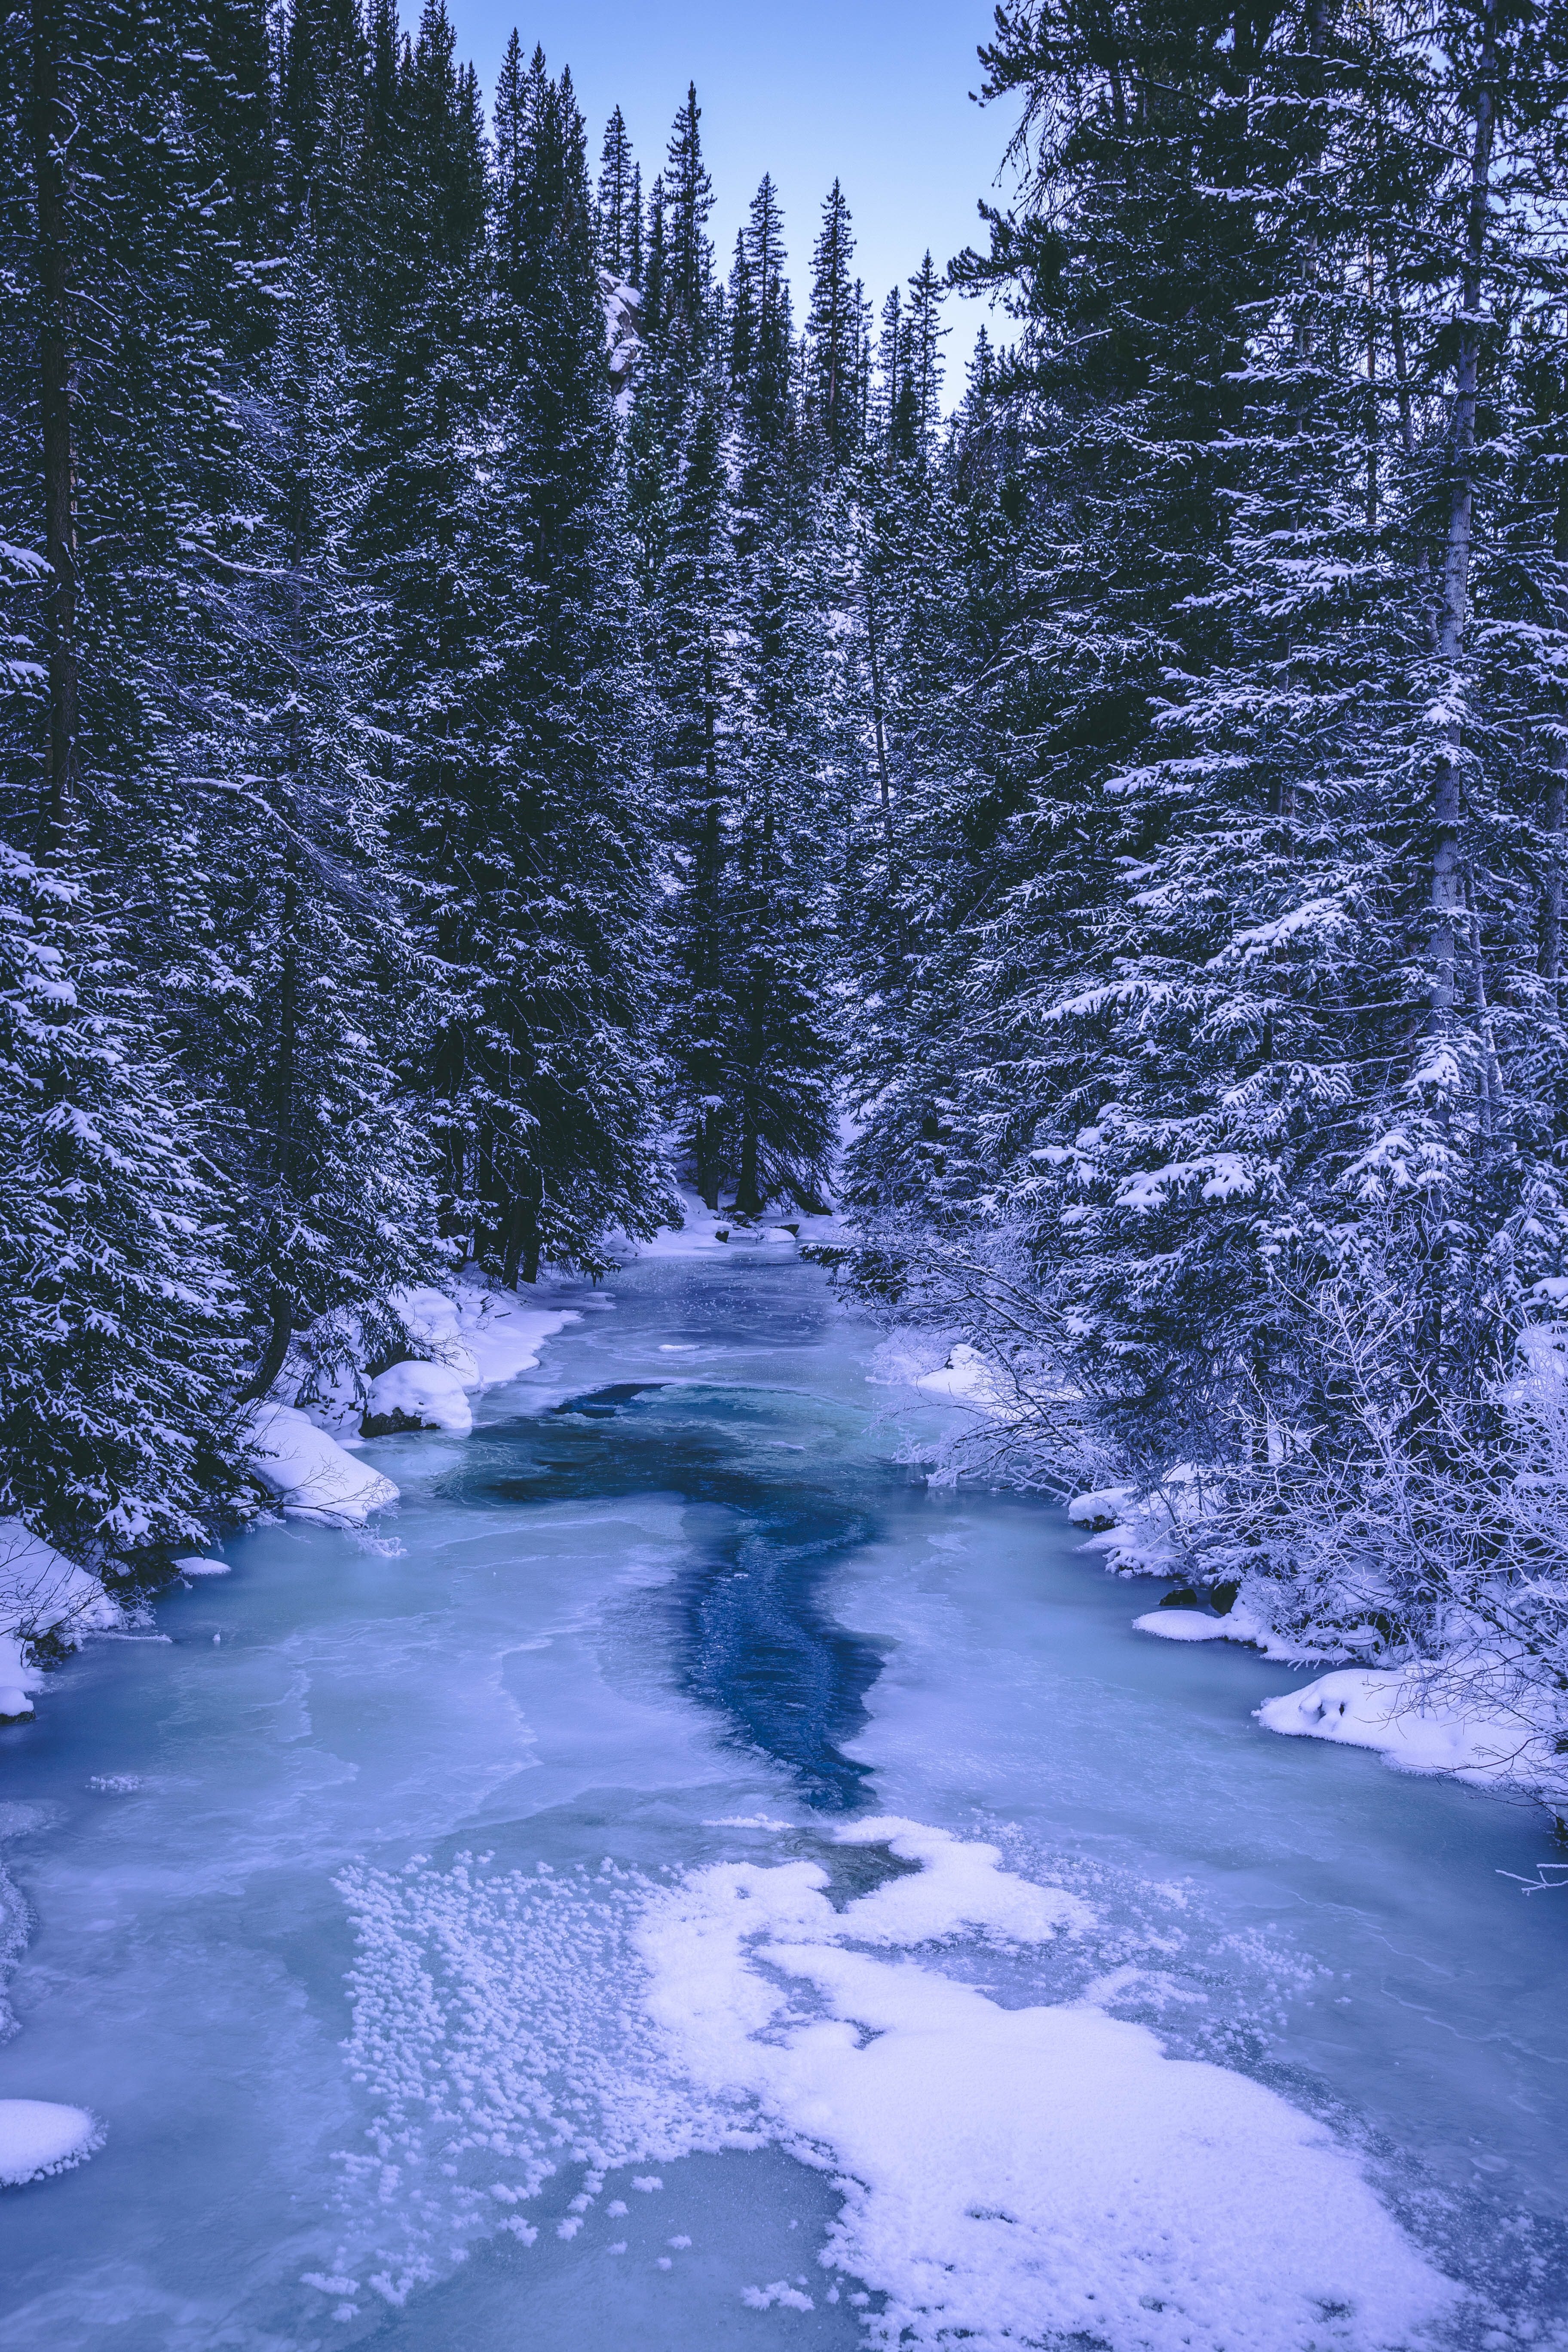 Скачать обои бесплатно Деревья, Природа, Лед, Снег, Лес, Река, Зима картинка на рабочий стол ПК